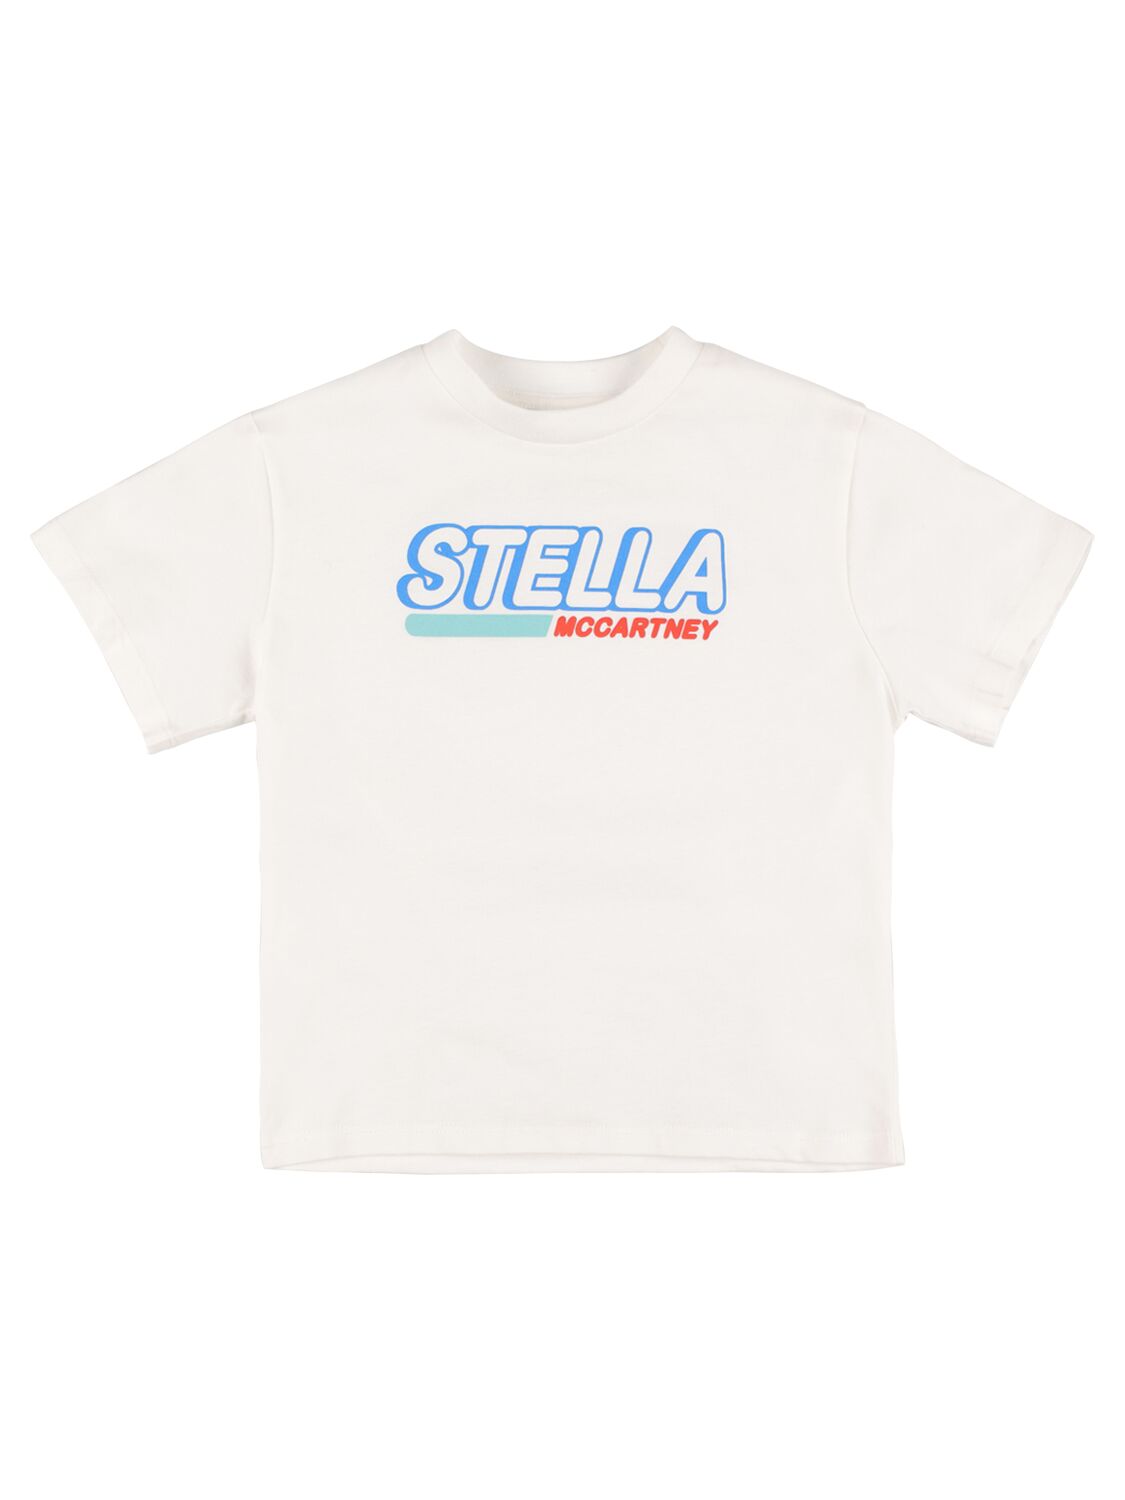 Stella Mccartney Kids Boys White Cotton T-shirt